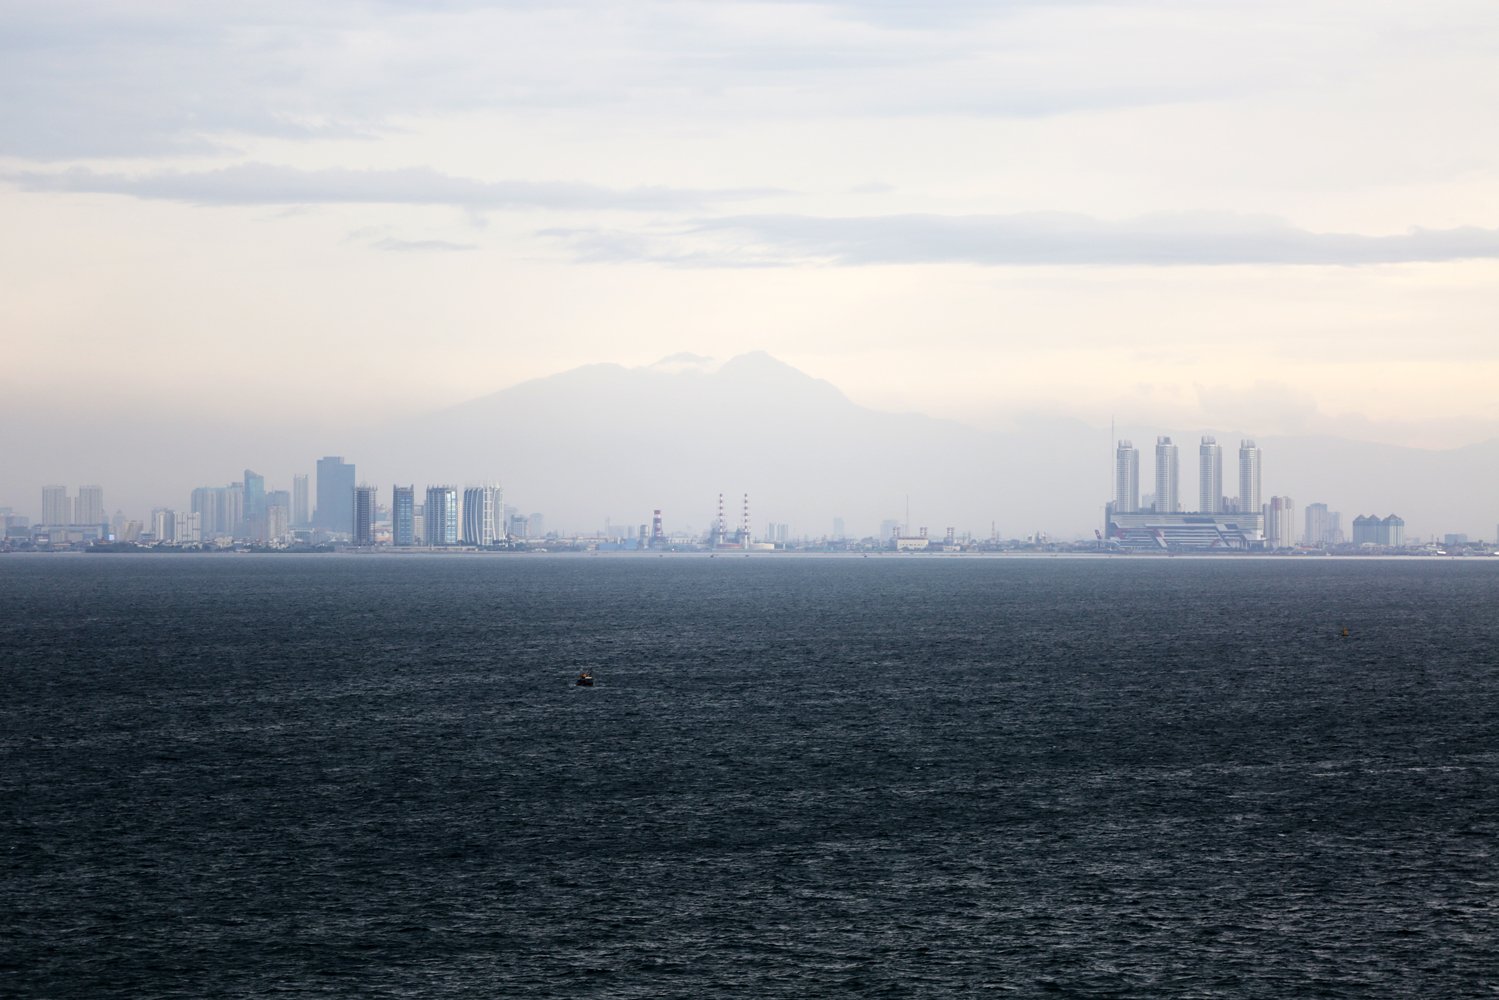 Tampak lanskap kota Jakarta dari anjungan kapal penyimpan LNG apung milik Nusantara Regas Satu di Teluk Jakarta, Kamis (4/1).